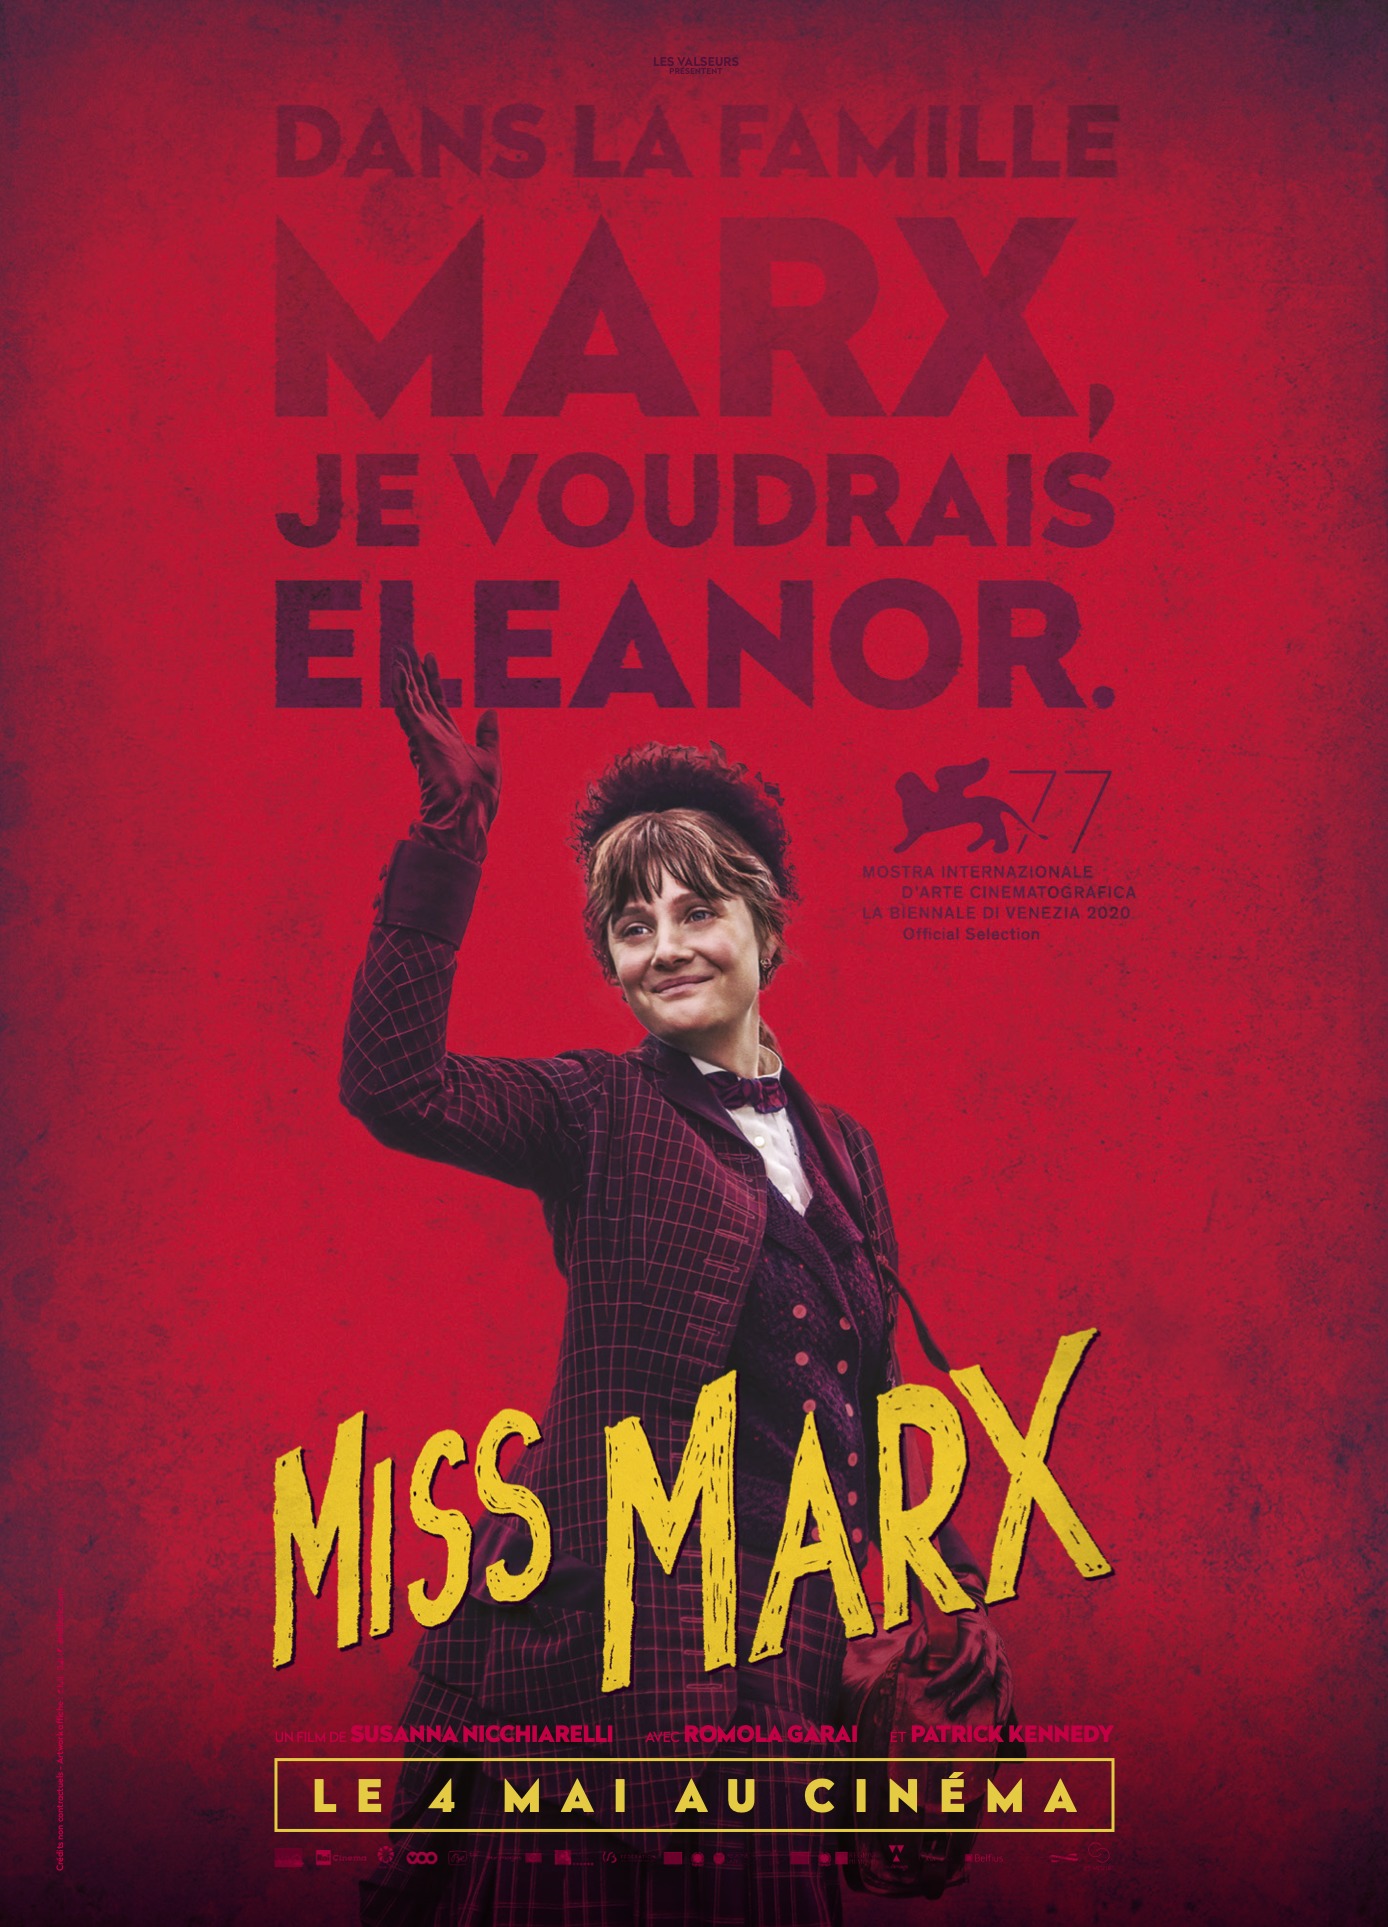 Miss marx